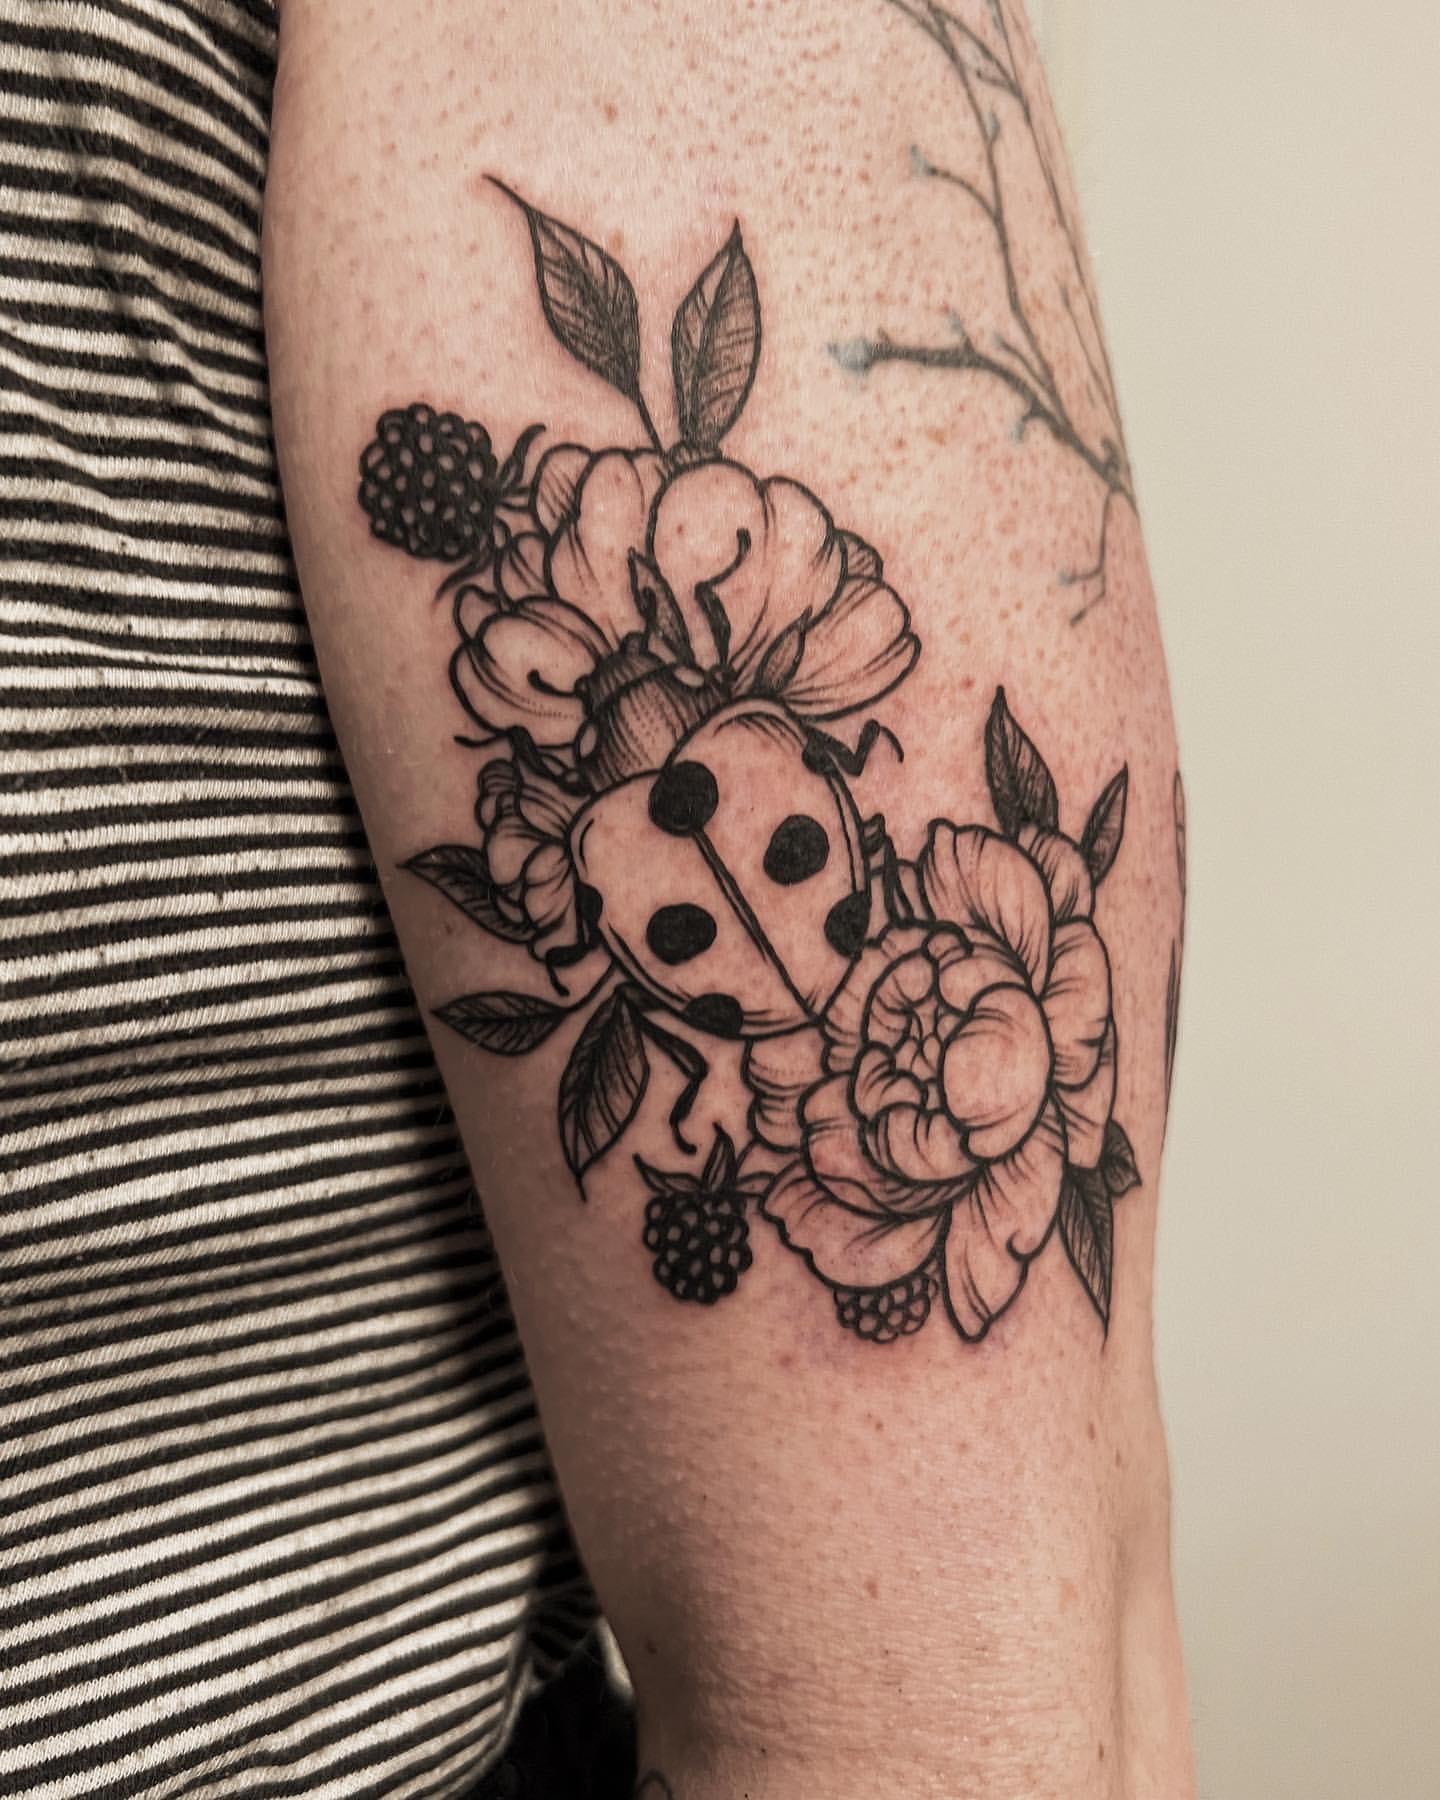 Ladybug Tattoo Ideas 11